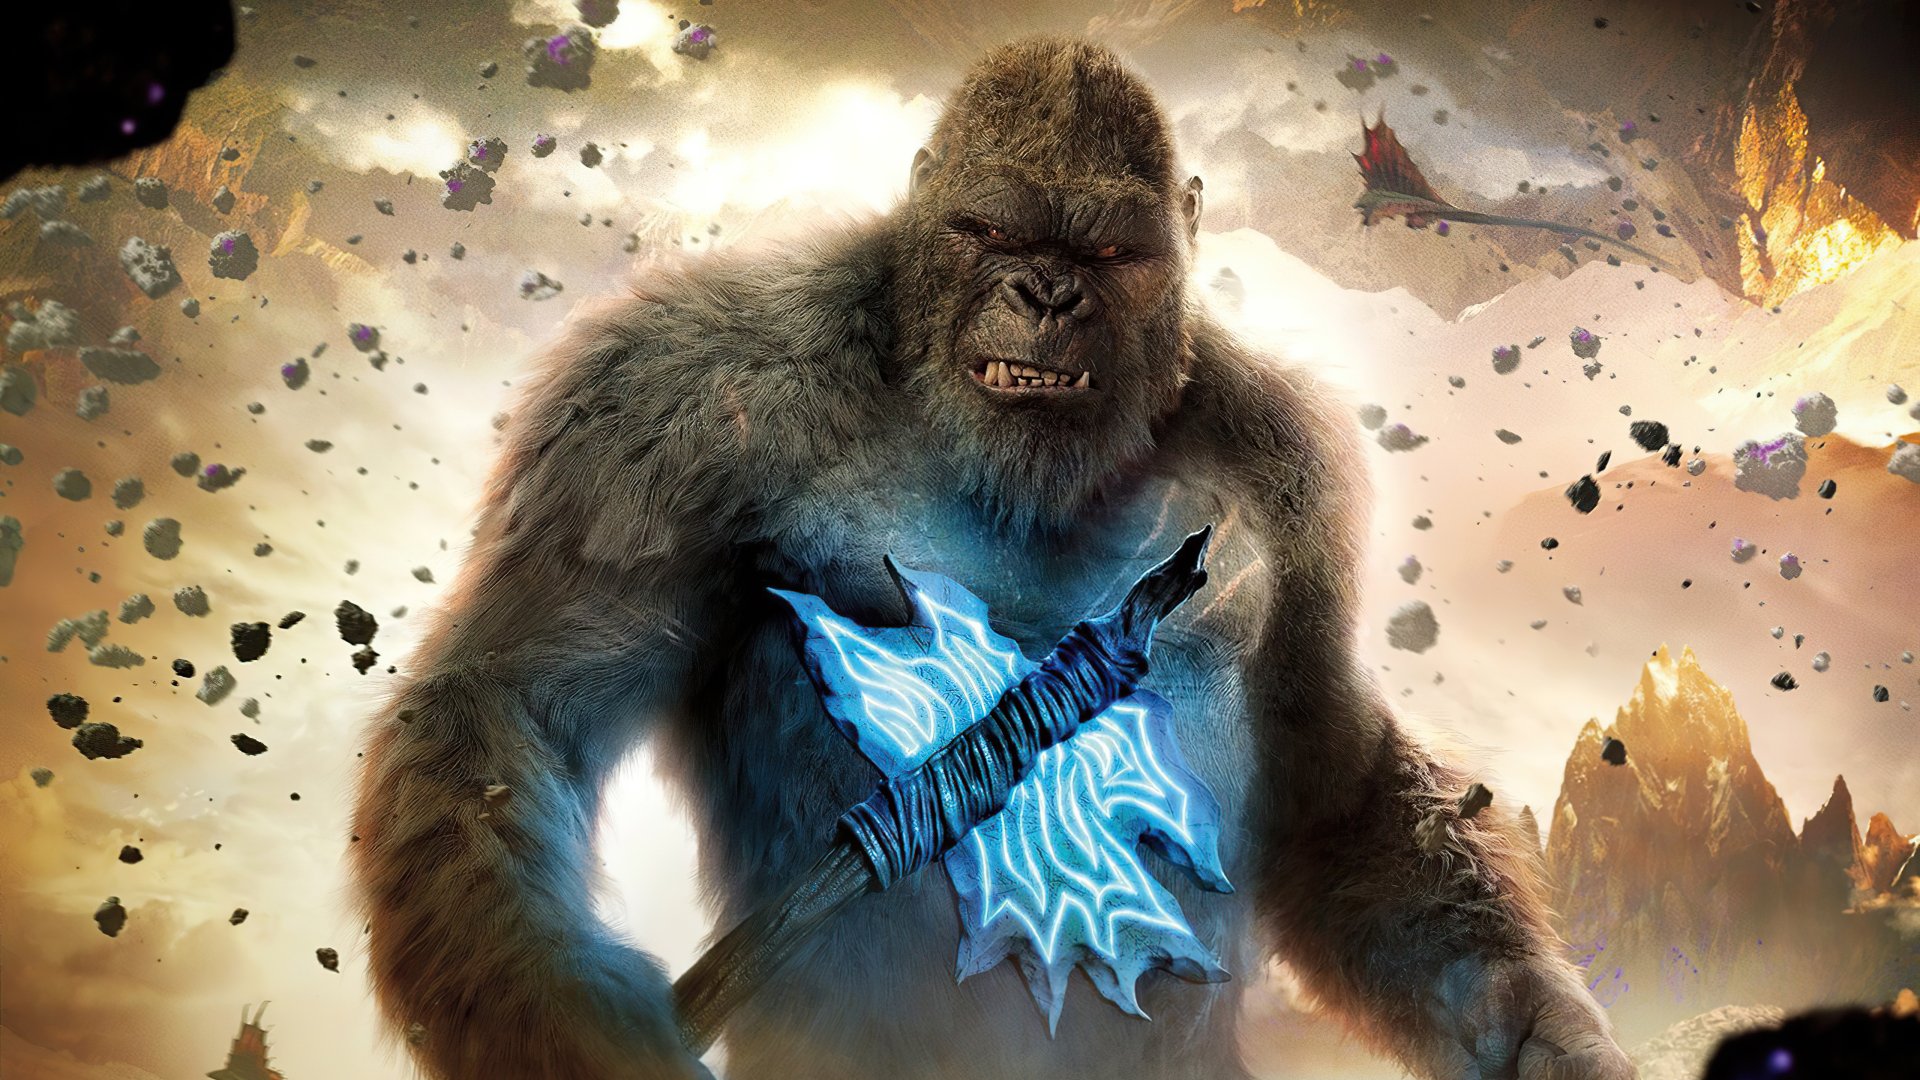 Hình nền  Godzilla Ảnh chụp màn hình Hình nền máy tính Nhân vật hư cấu  Hiện tượng địa chất 2971x1510  br3athless  116970  Hình nền đẹp hd   WallHere